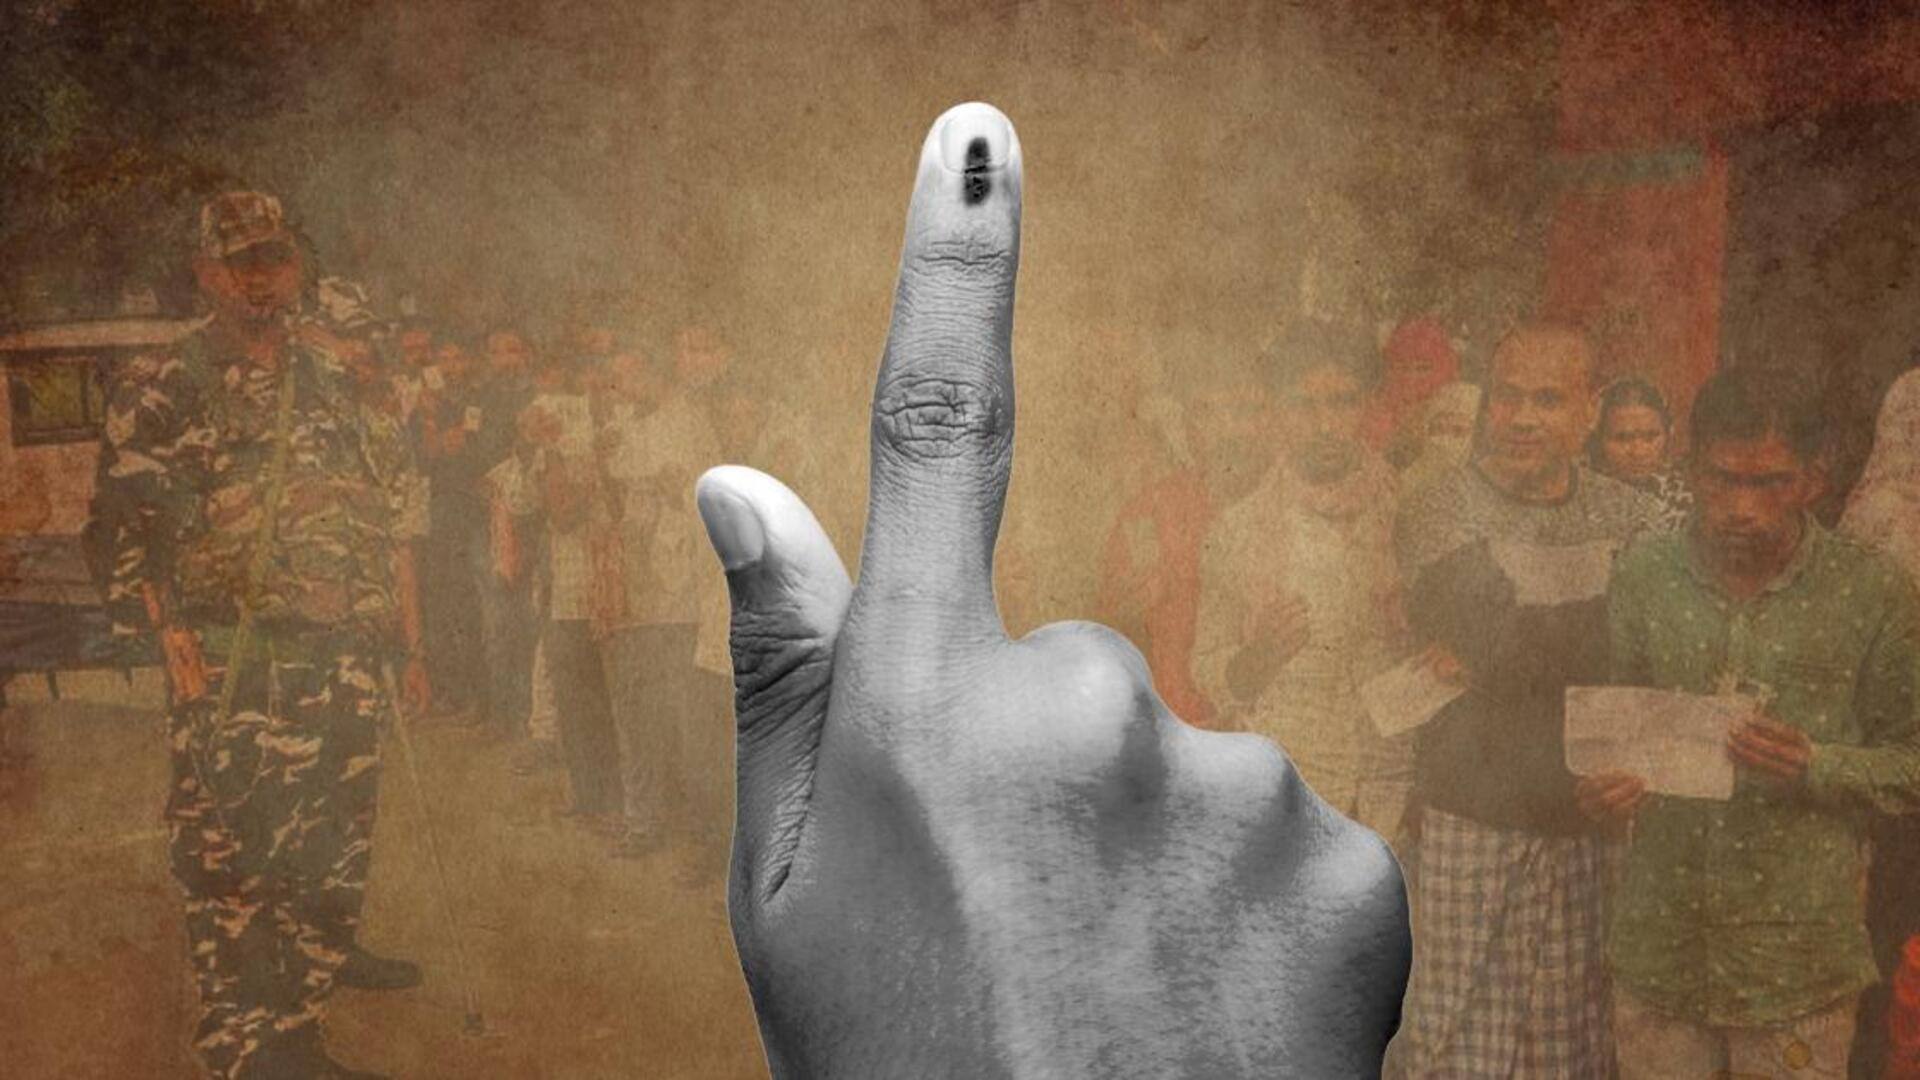 कर्नाटक विधानसभा चुनाव की मतगणना जारी, शुरुआती रुझान में कांग्रेस पूर्ण बहुमत की ओर 